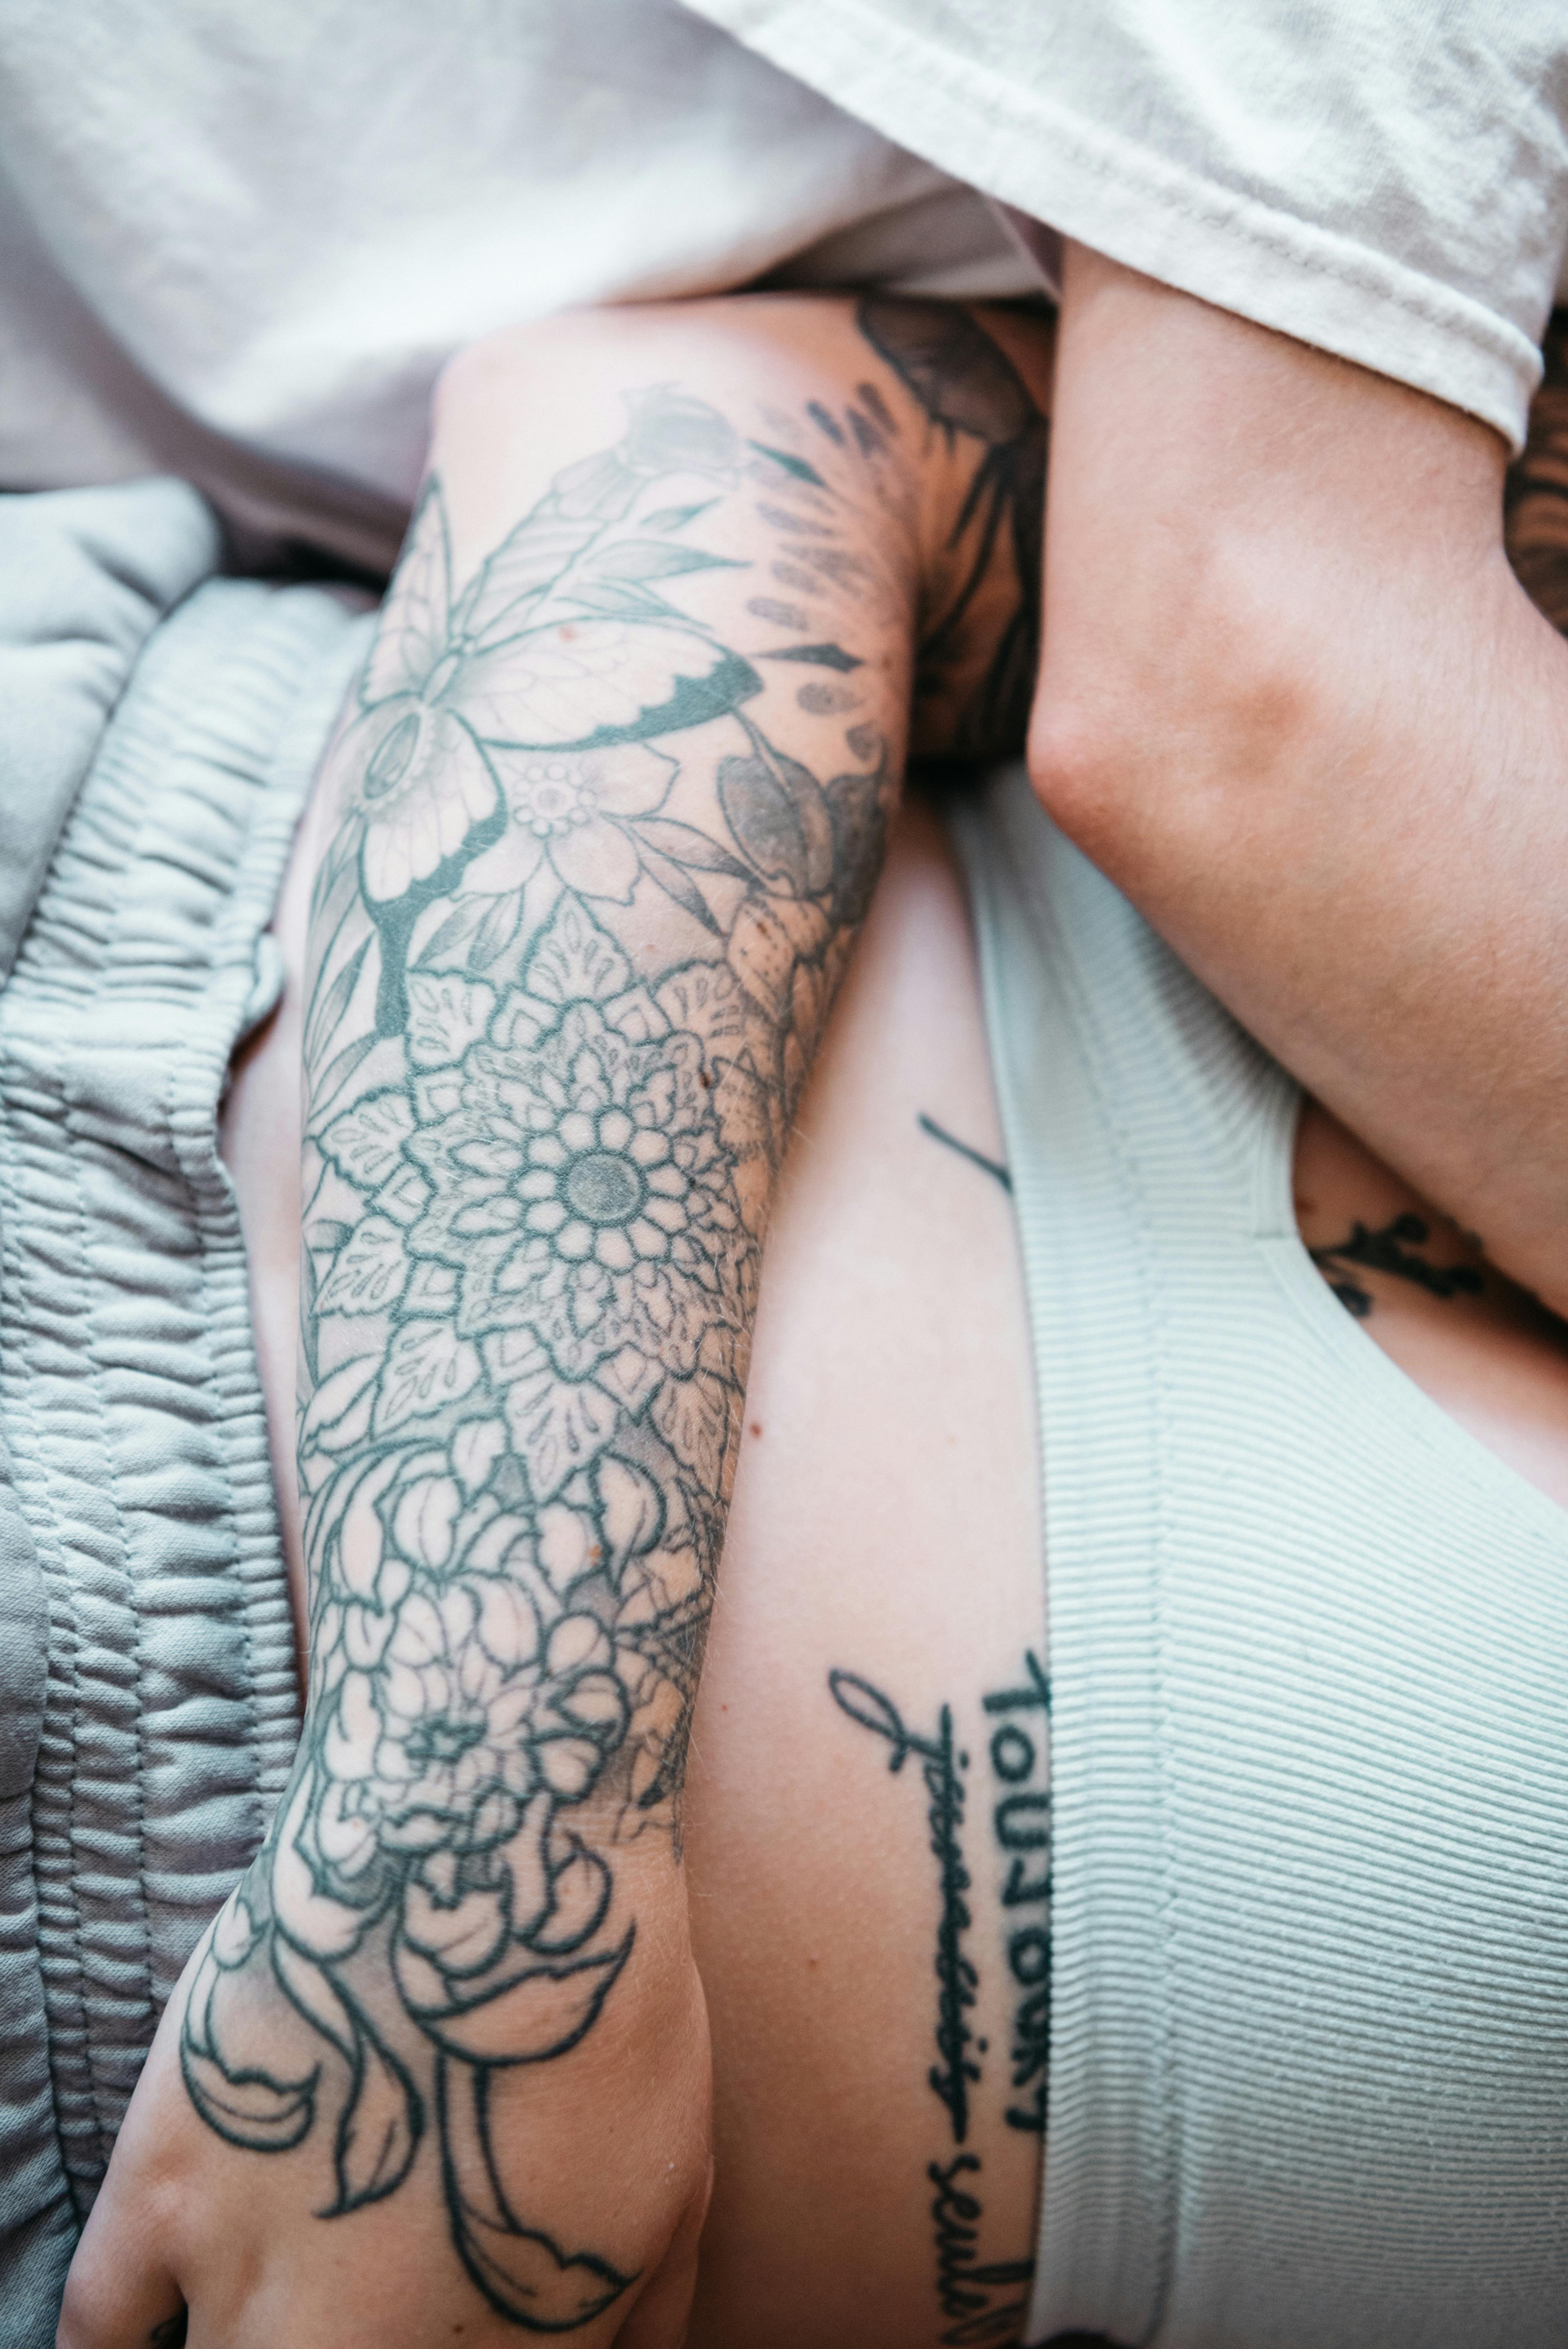 tiny tats | Tattoos, Leaf tattoos, Arm tattoo